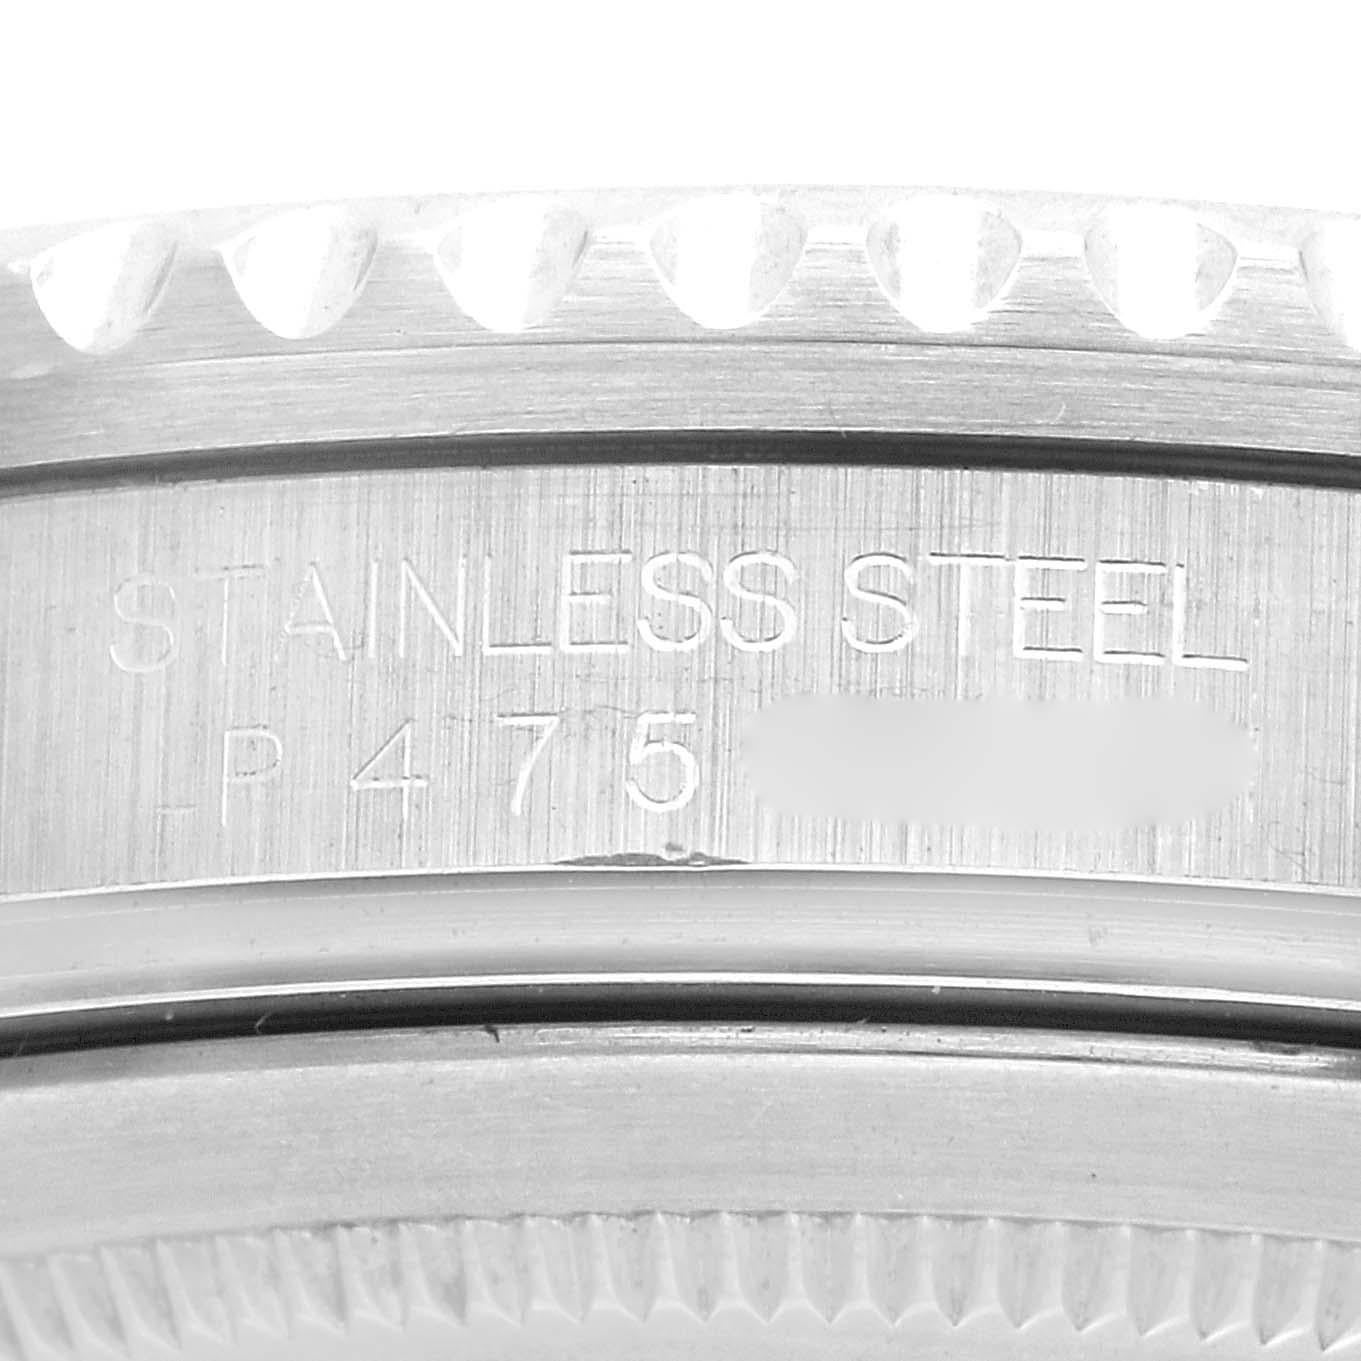 Rolex GMT Master II Black Red Coke Bezel Steel Mens Watch 16710 Box Papers. Mouvement automatique à remontage automatique, officiellement certifié chronomètre. Boîtier en acier inoxydable de 40 mm de diamètre. Logo Rolex sur la couronne. Lunette